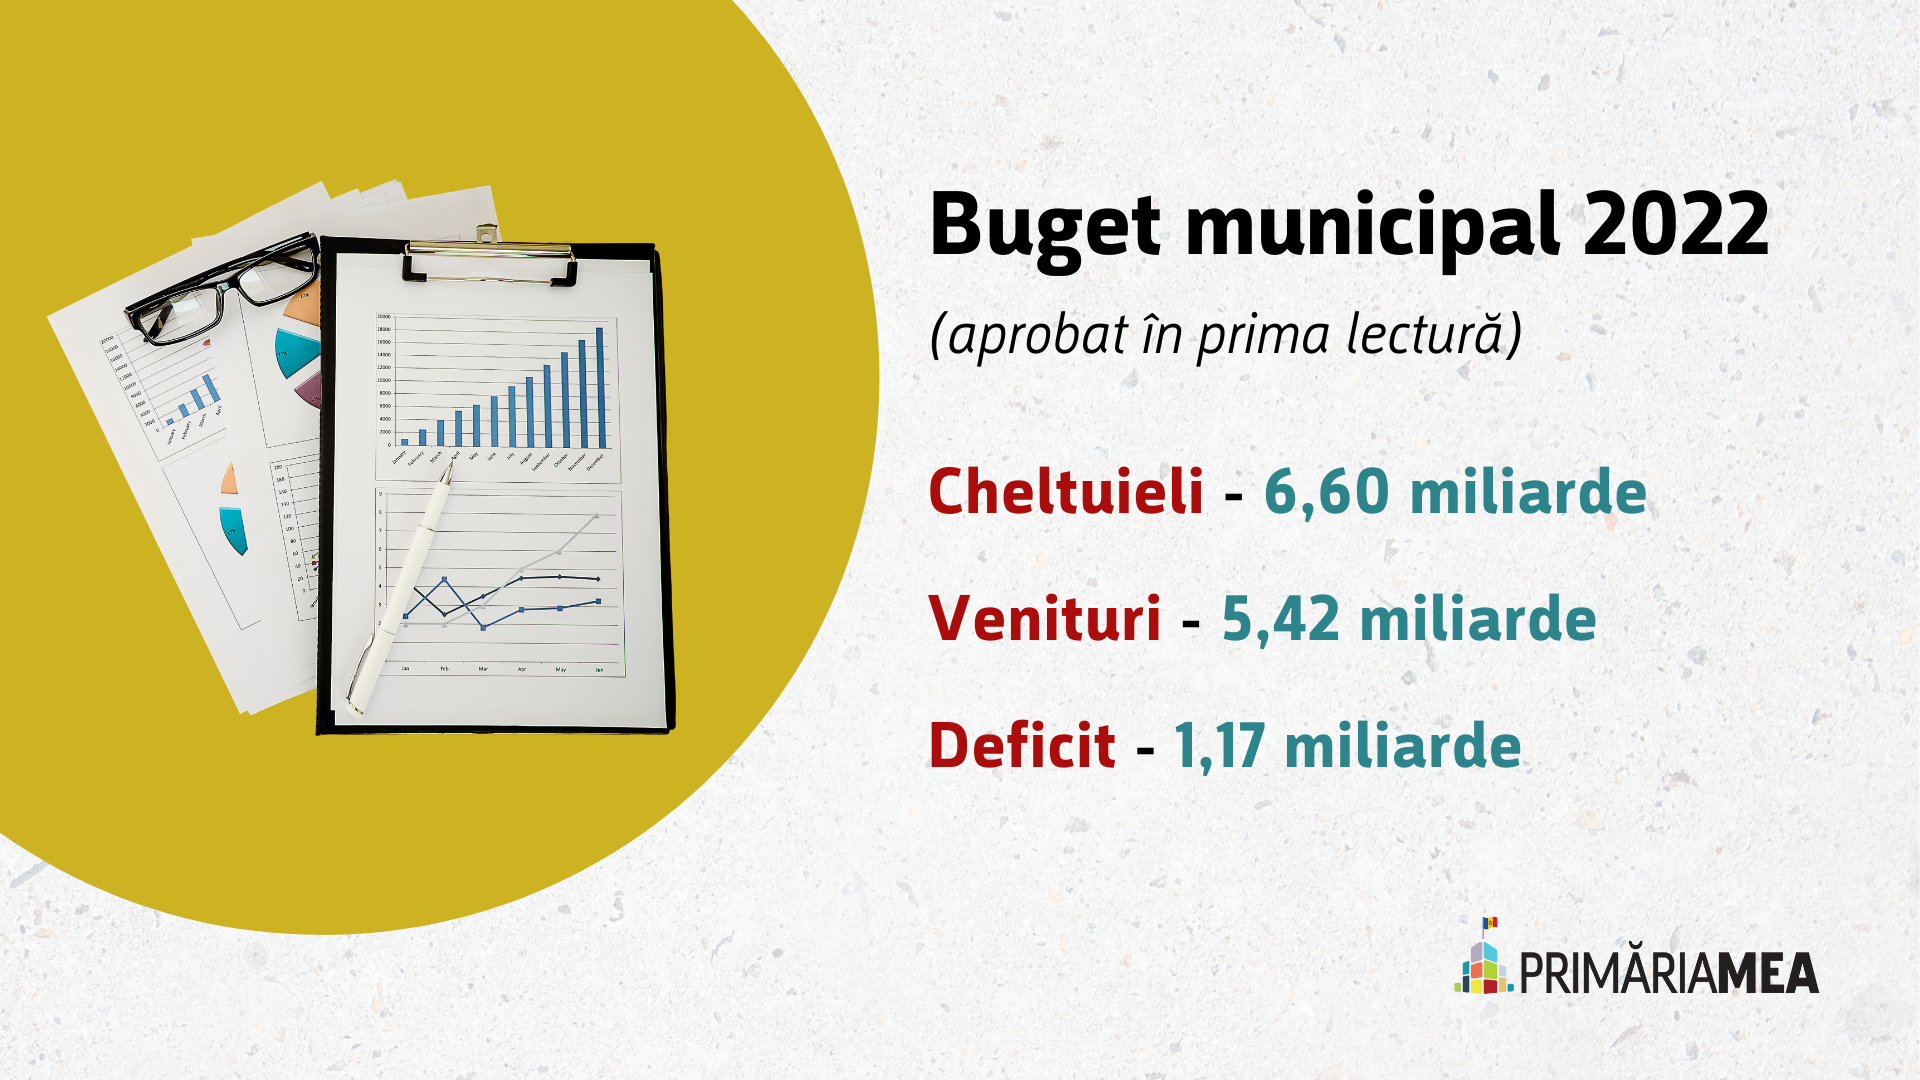 Infografic: Buget municipal pentru anul 2022 aprobat în prima lectură. Sursă: Primăria Mea